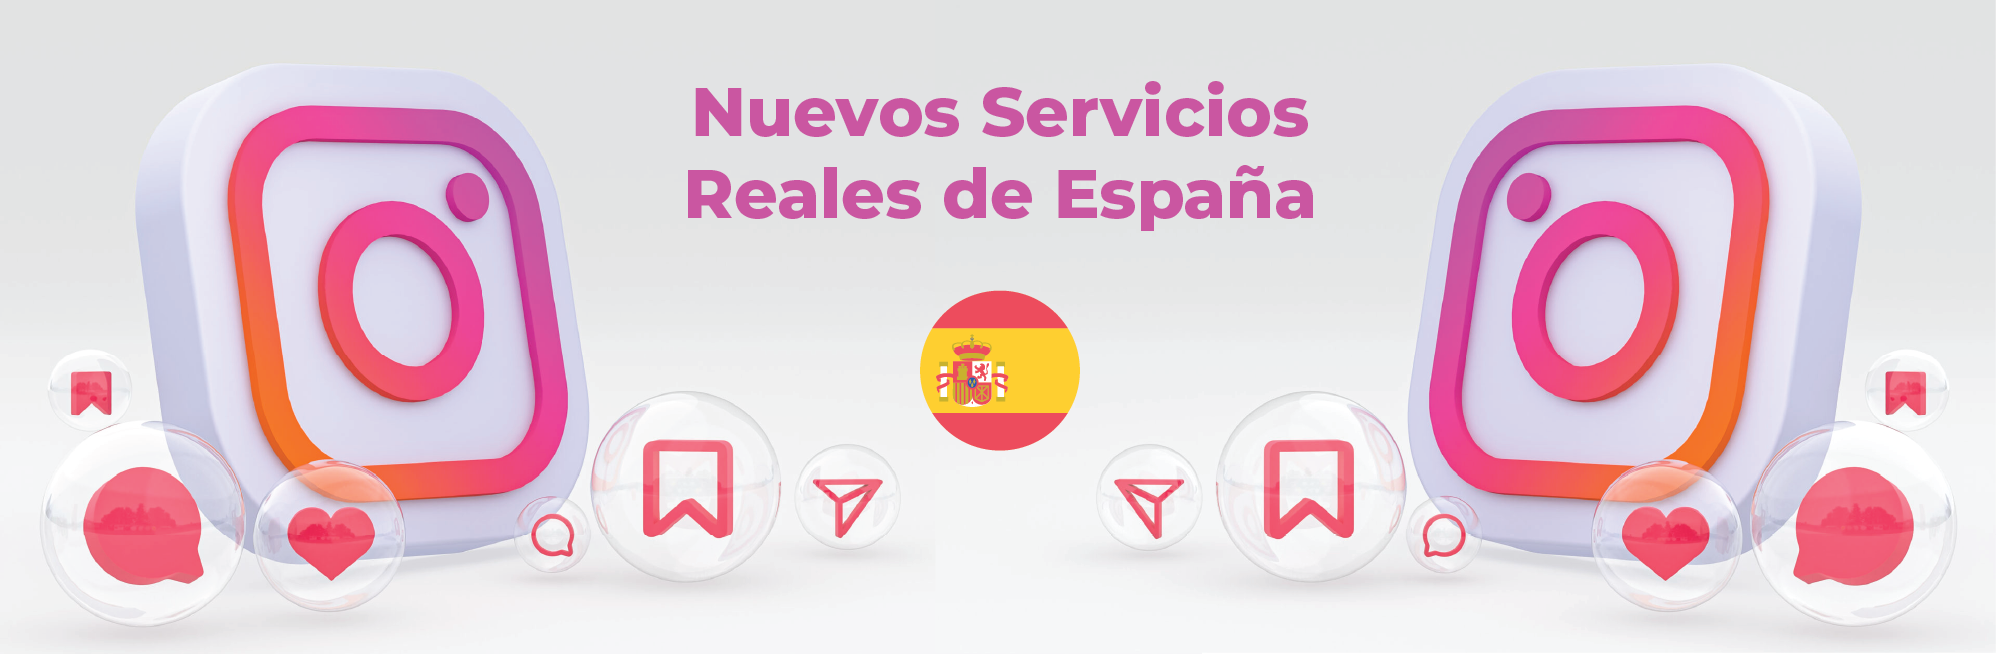 Servicios Reales de España en Instagram